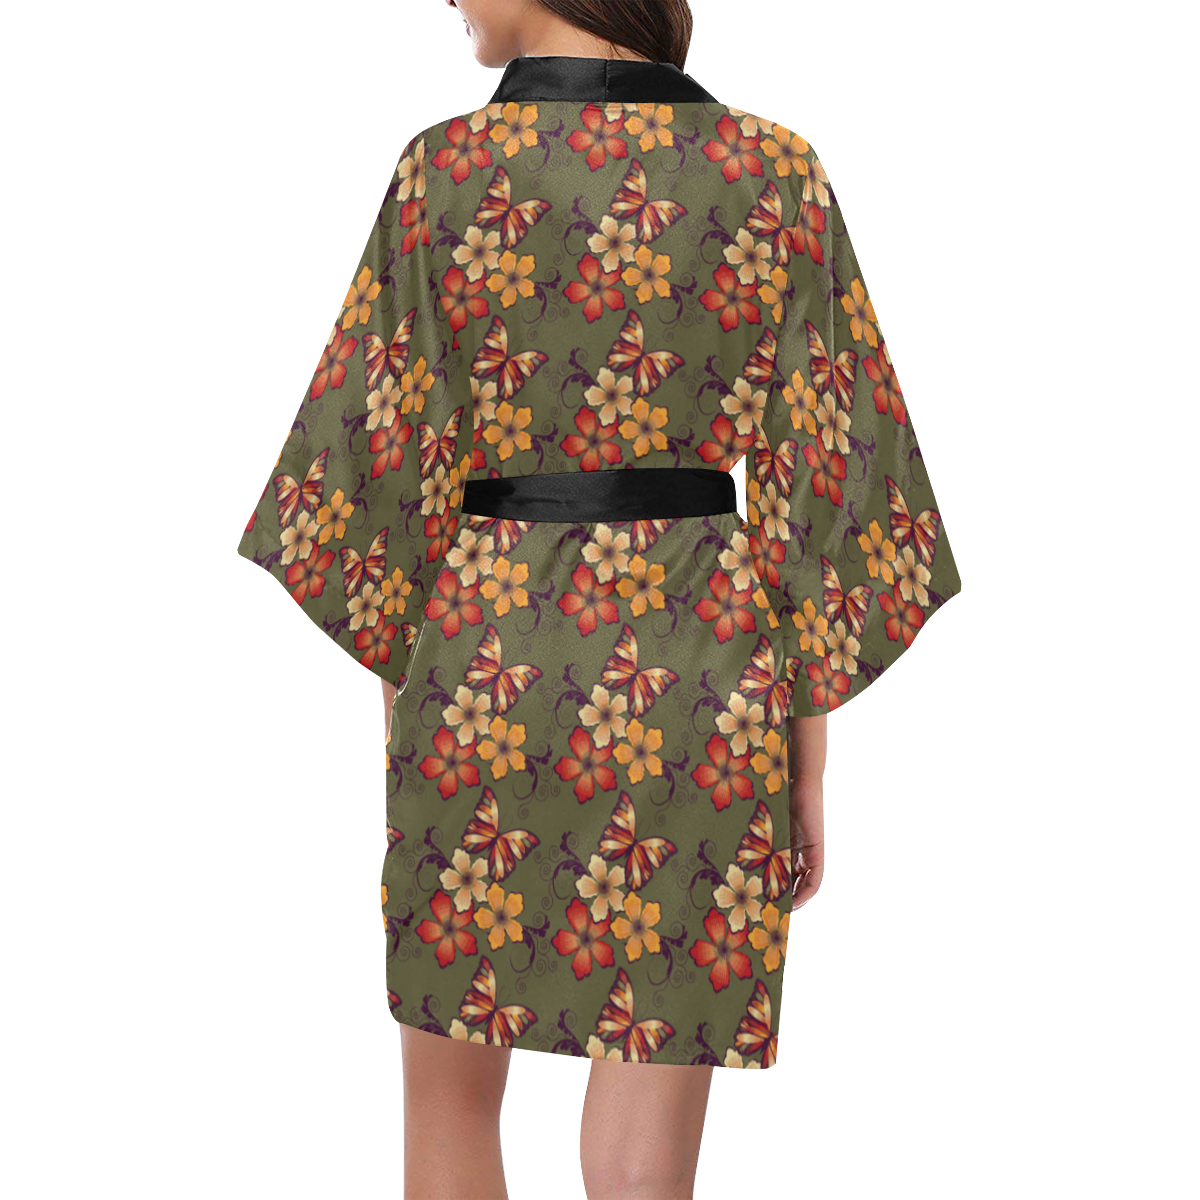 119st Kimono Robe